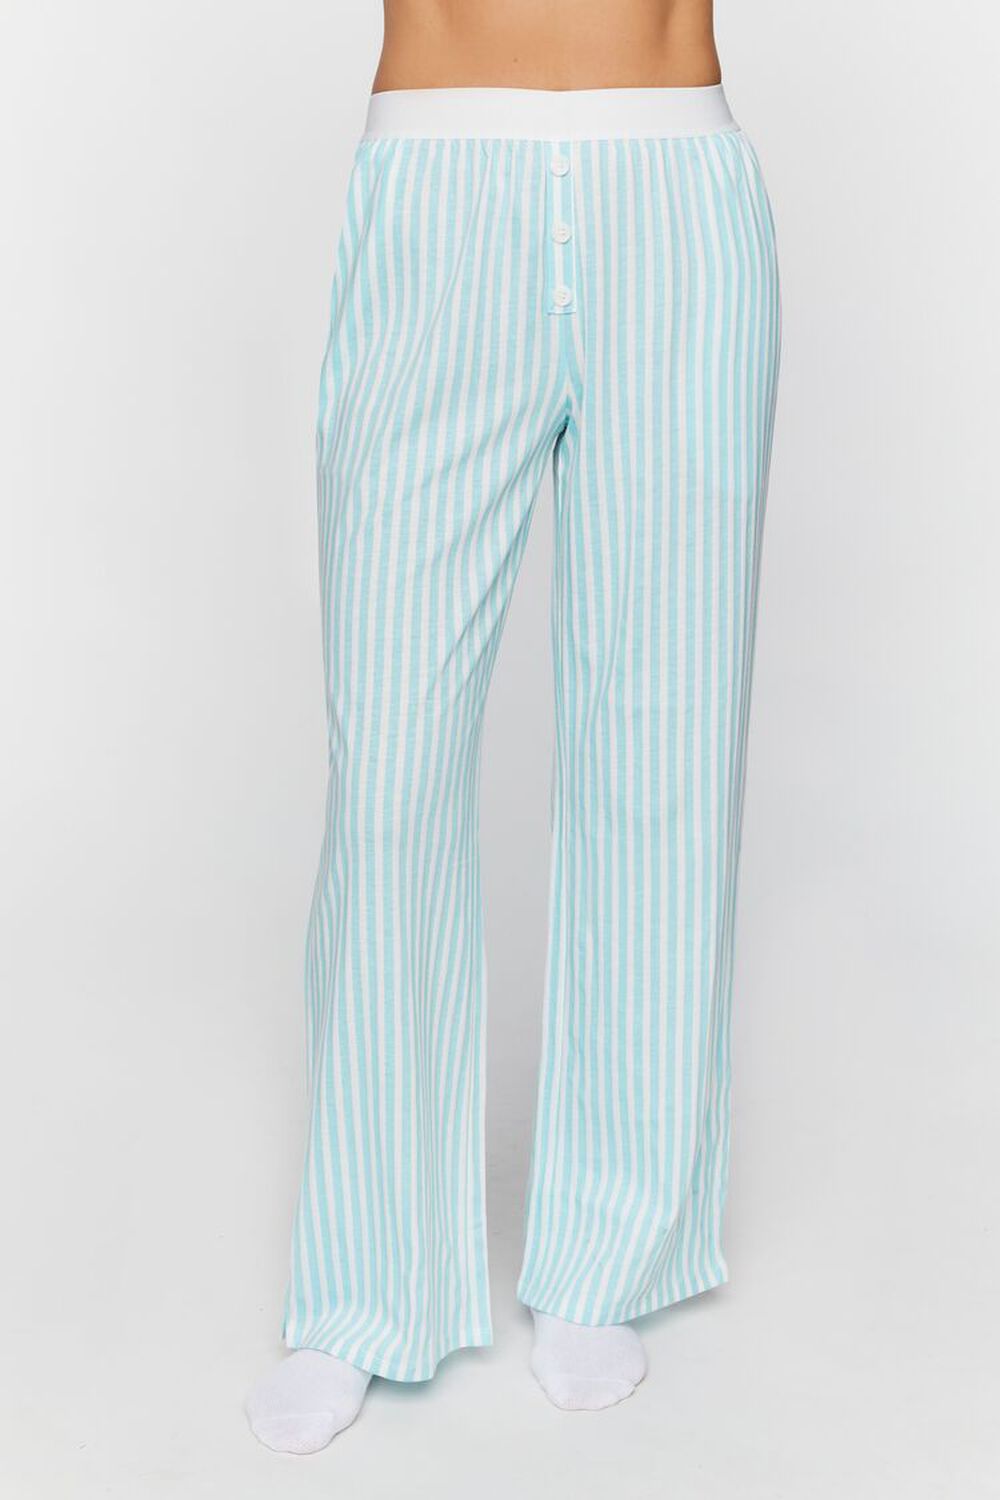 POWDER BLUE/WHITE Striped Wide-Leg Pajama Pants, image 2